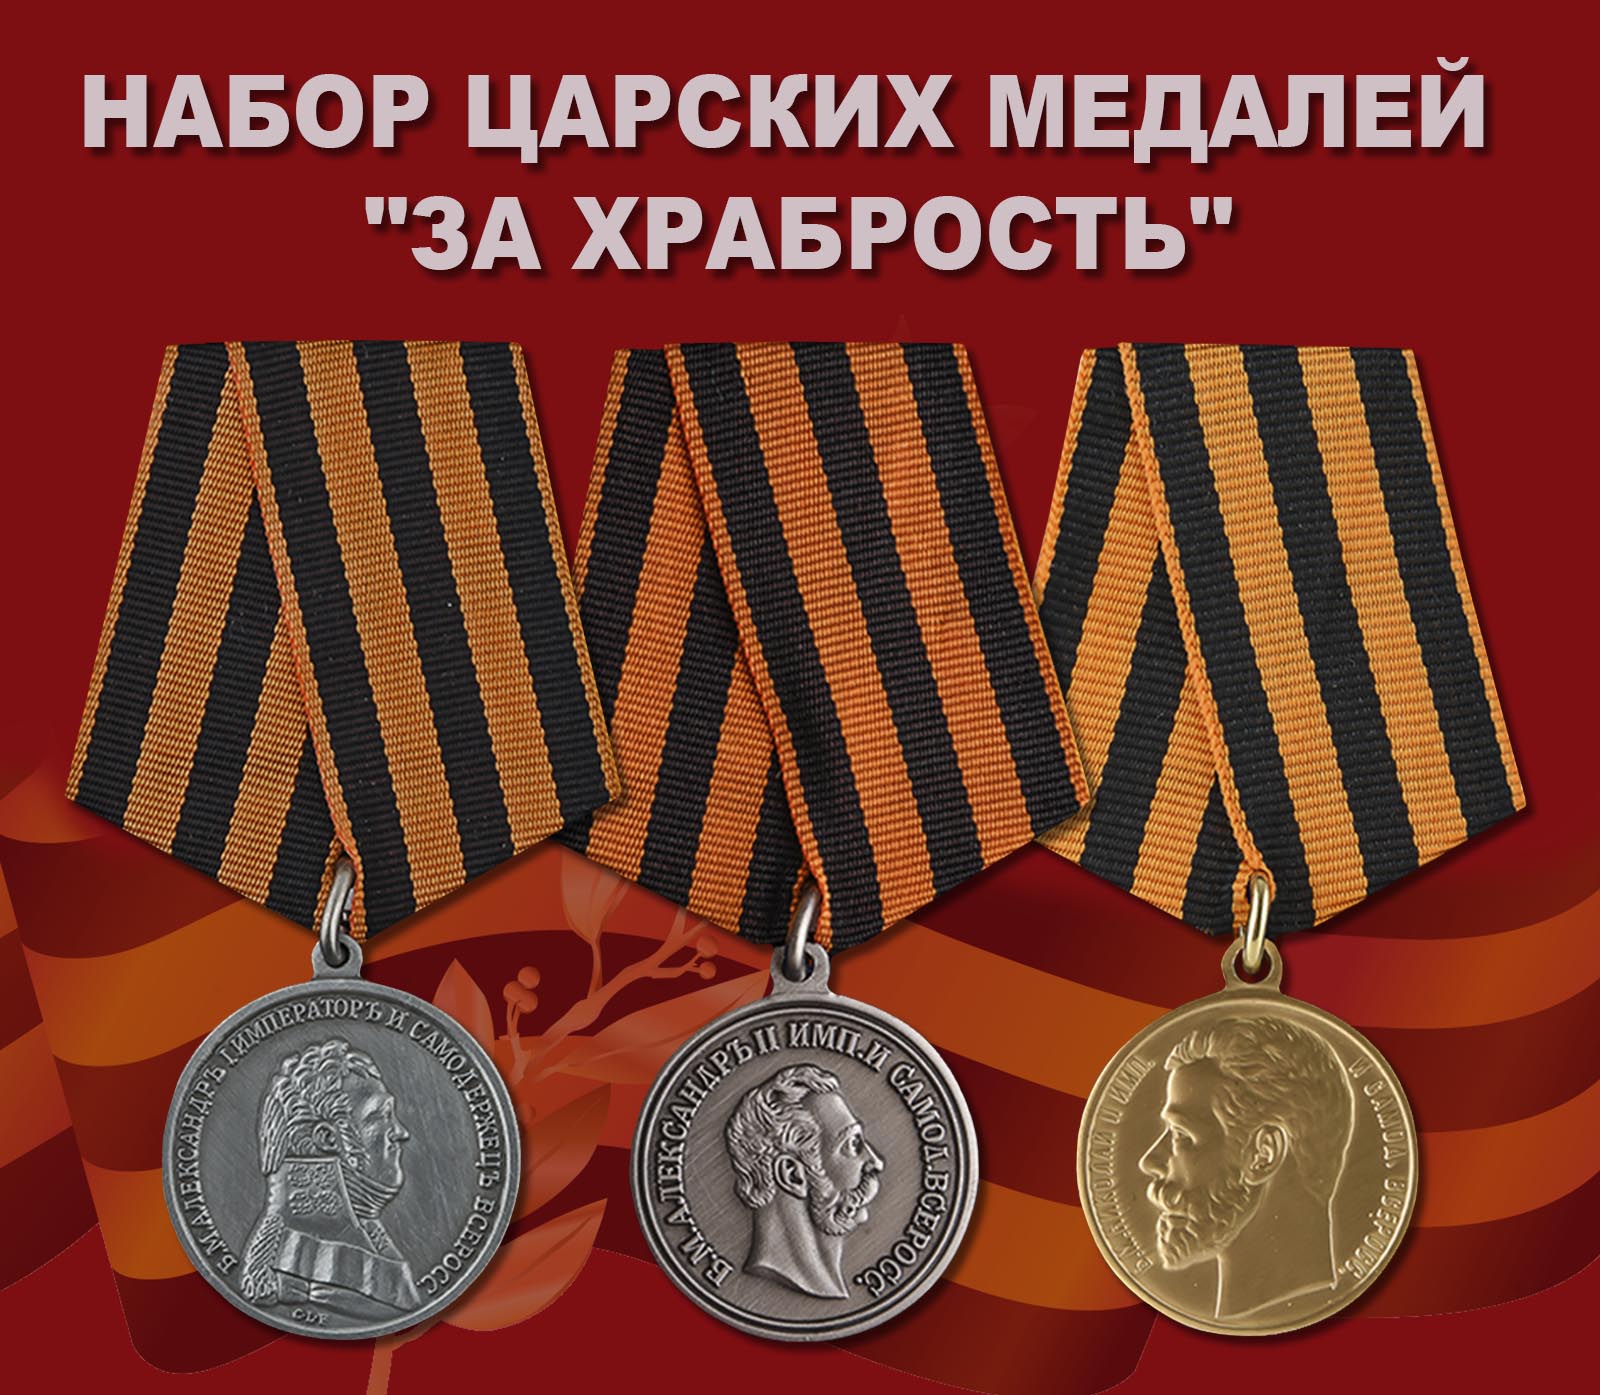 Купить набор царских медалей "За храбрость"